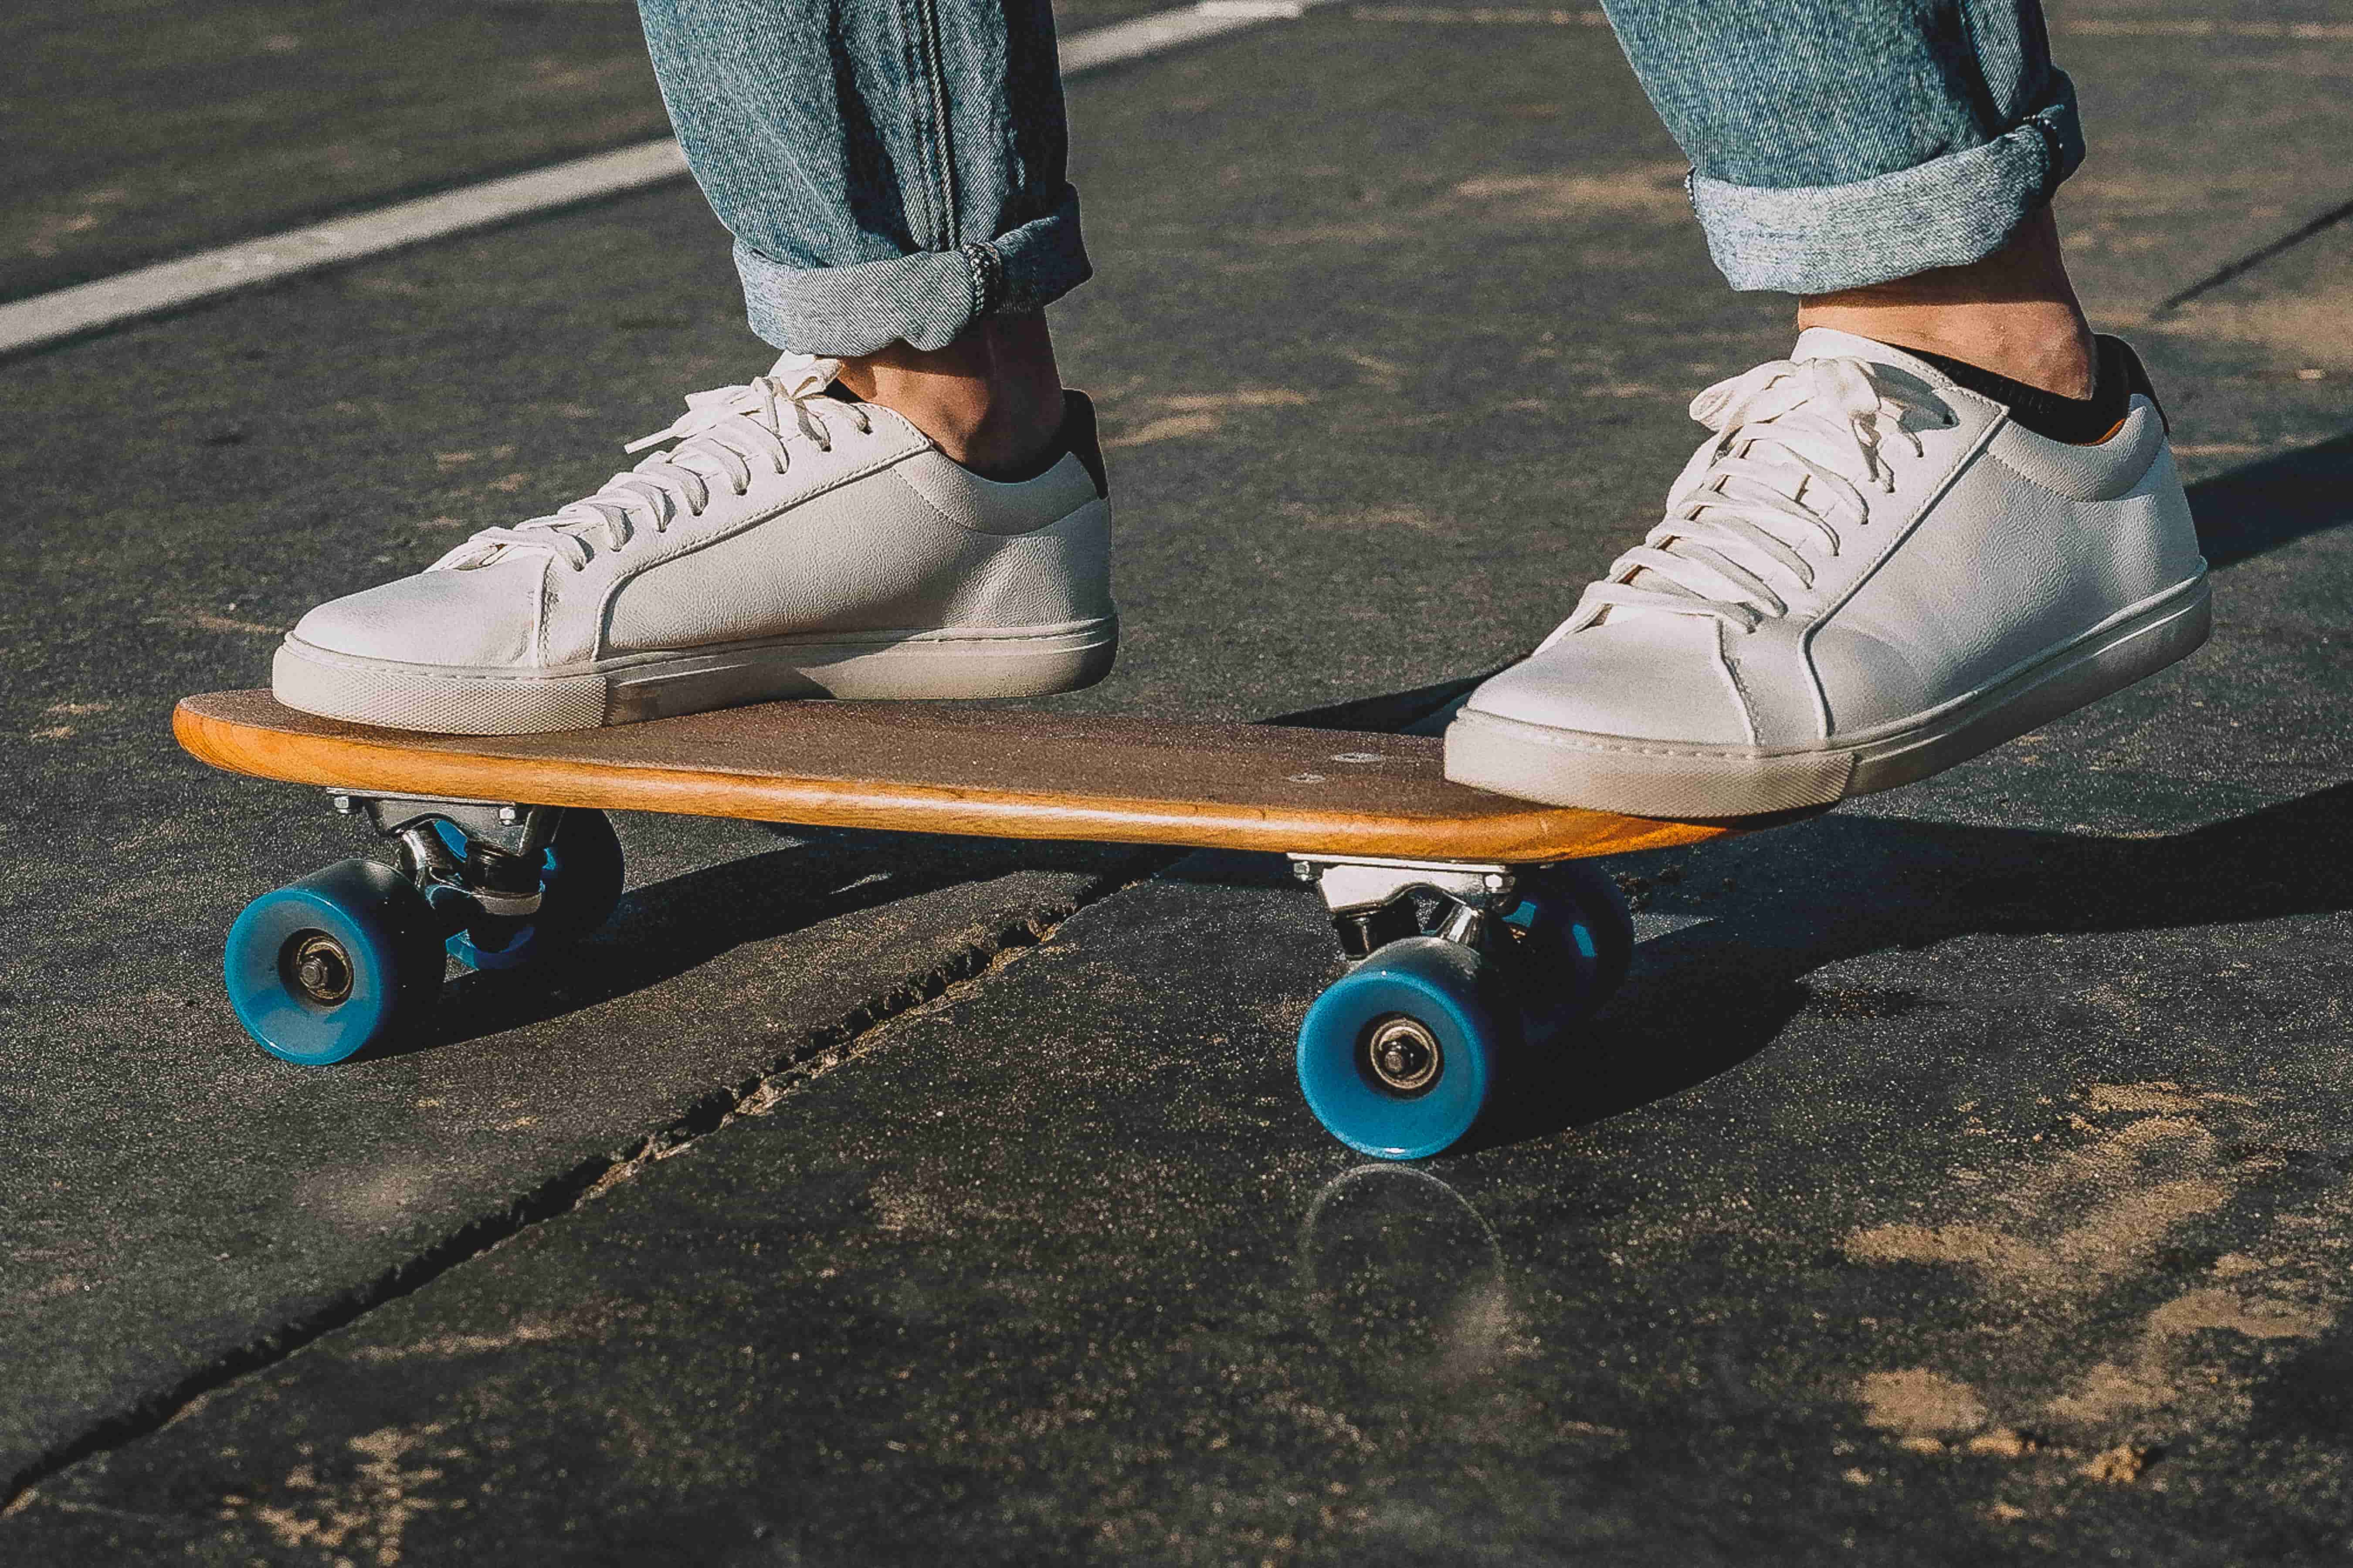 roller skating, skateboarding